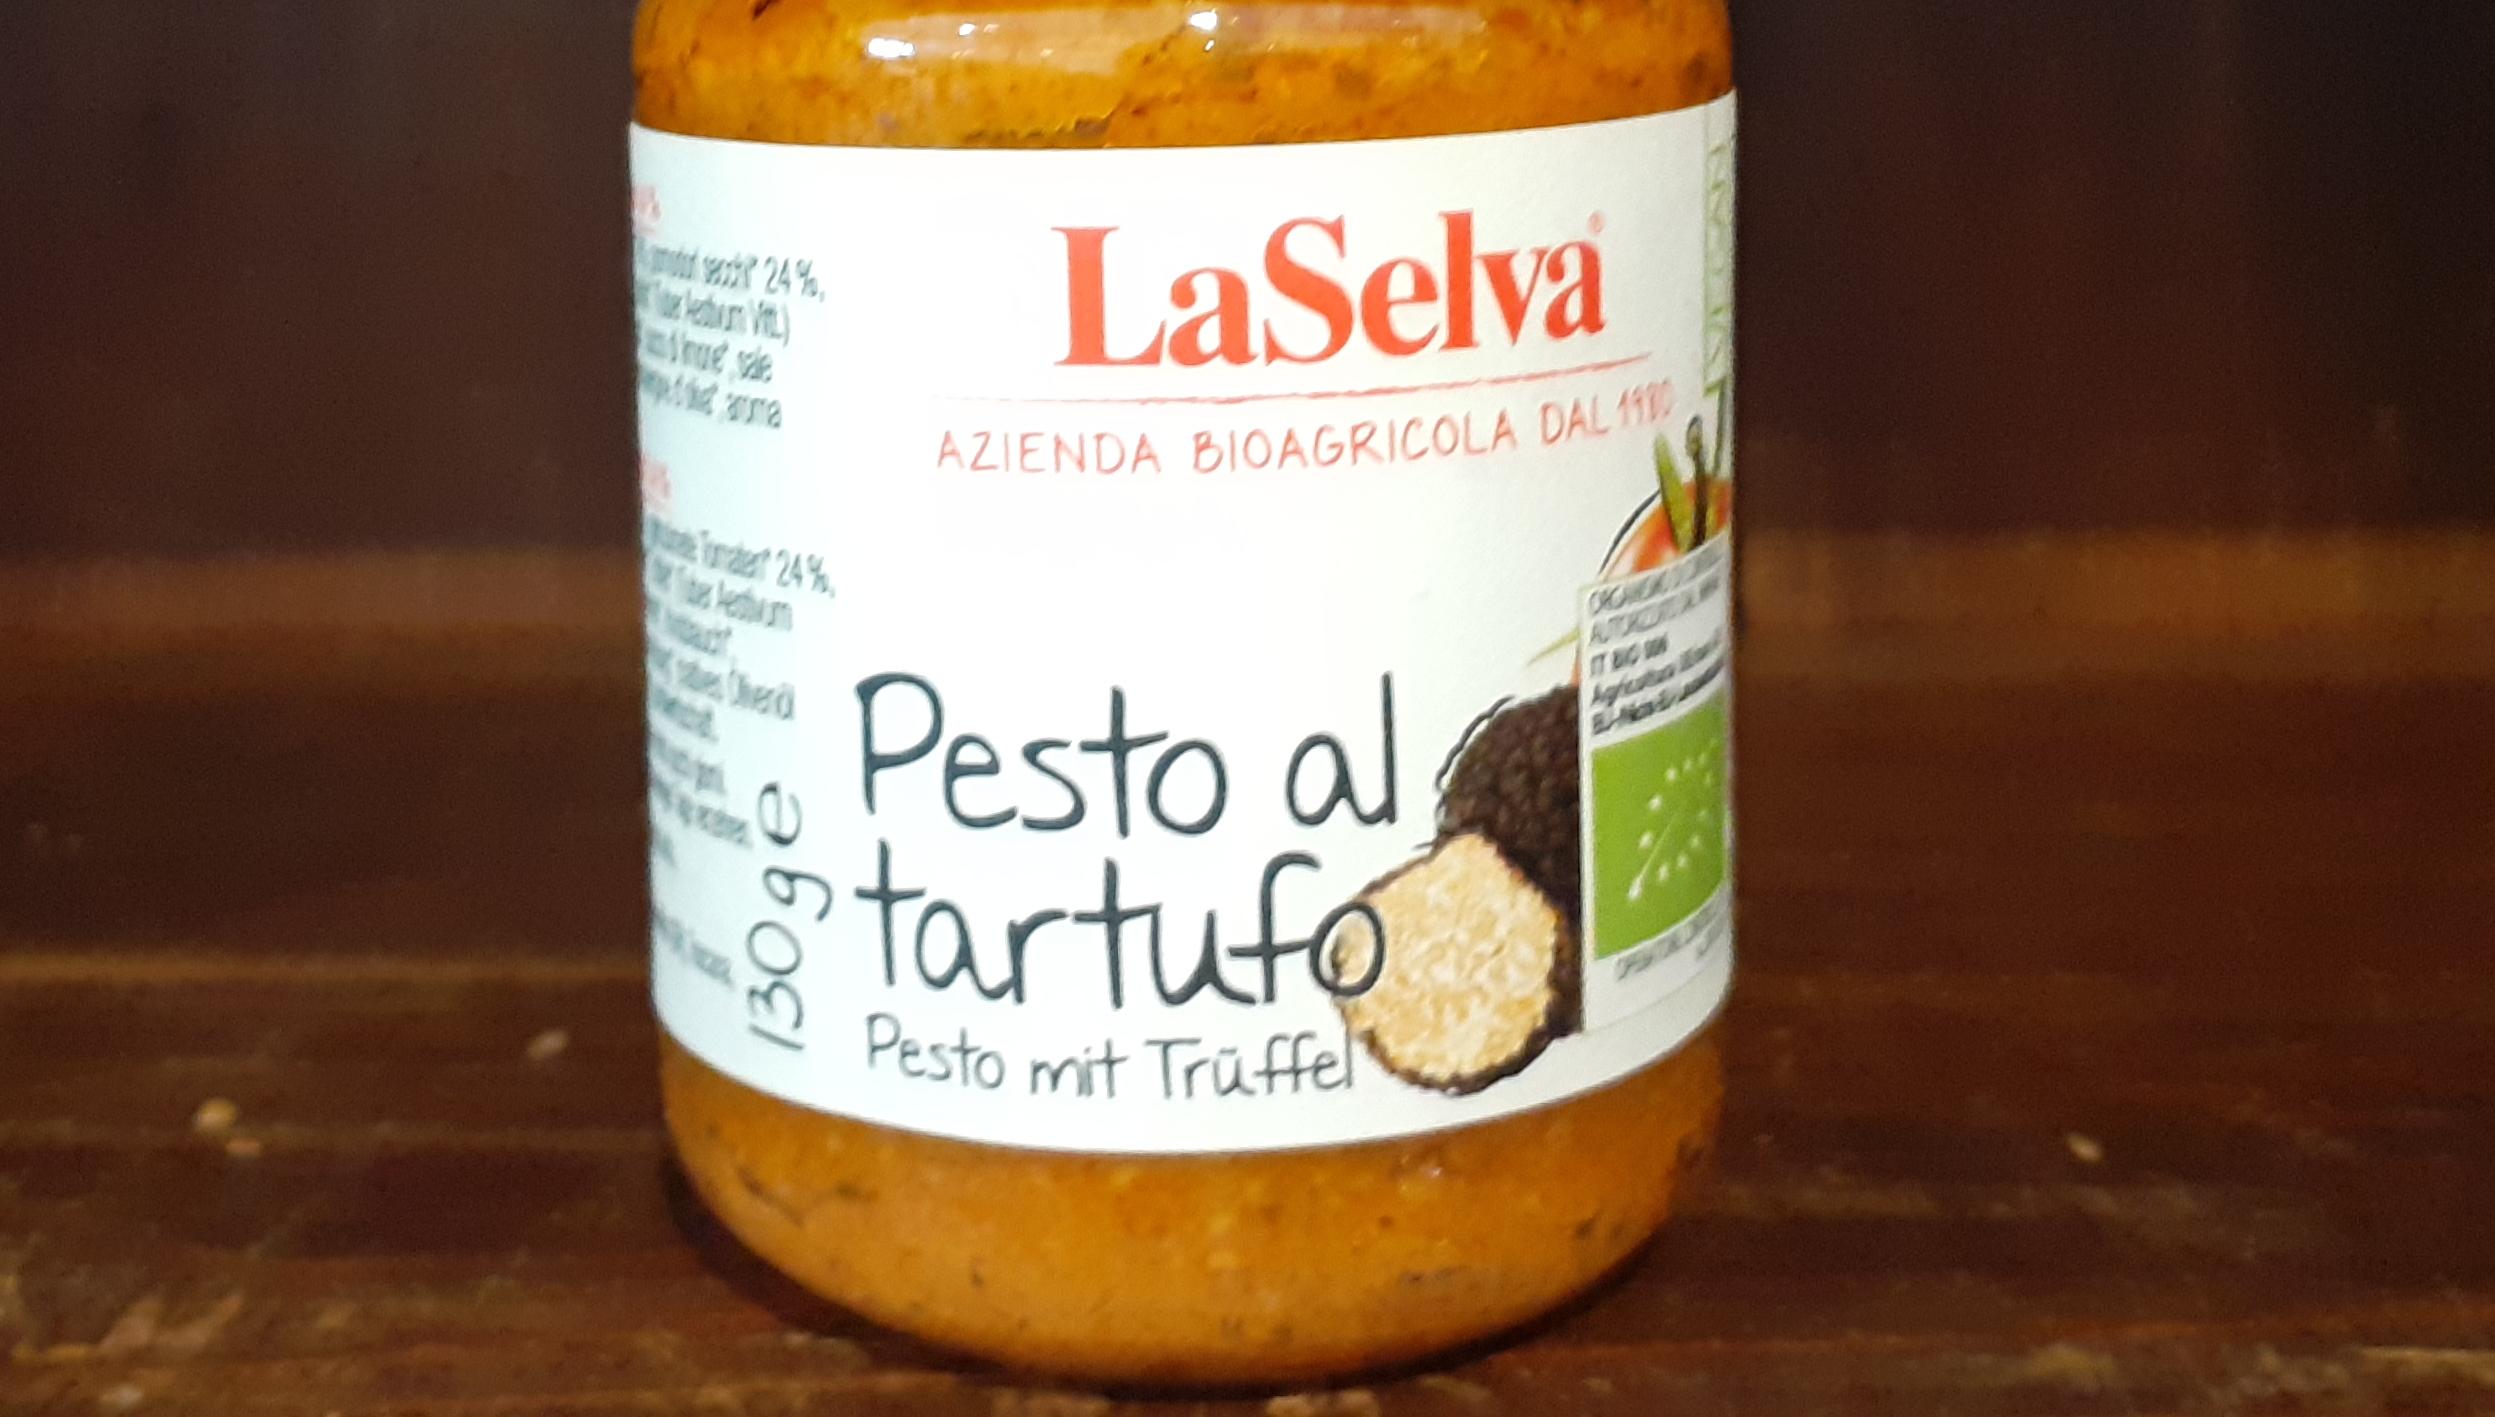 Pesto al tartufo, Pesto mit Trüffel